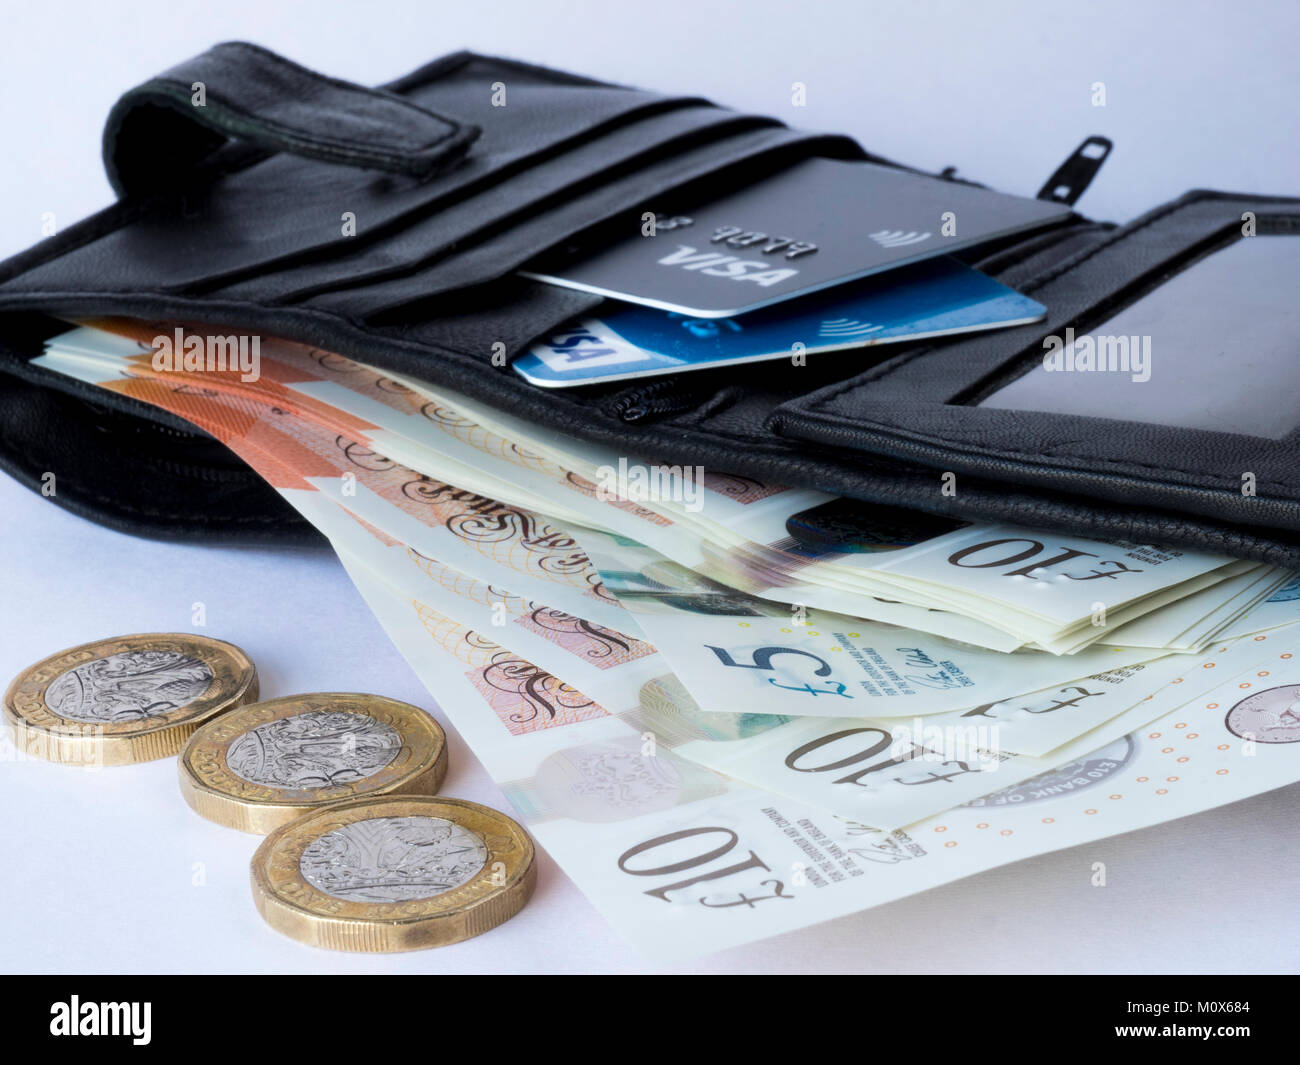 Un portefeuille en cuir noir contenant des cartes de crédit et de débit et de papier-monnaie avec trois pièces livre en premier plan Banque D'Images